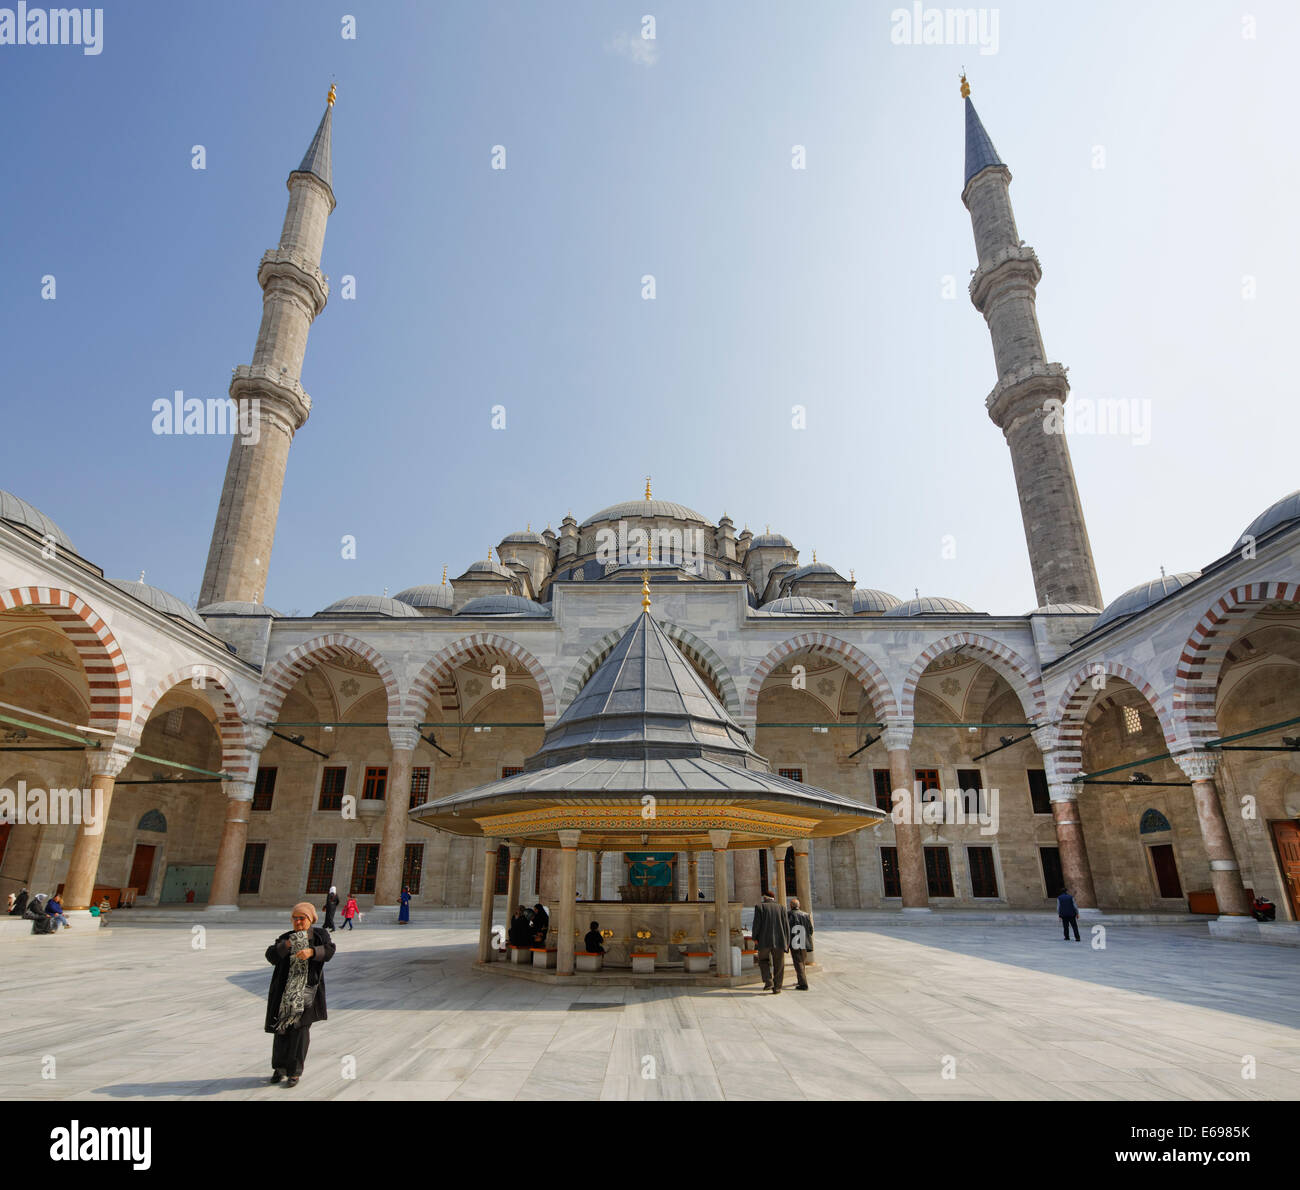 Il piazzale antistante la Moschea Fatih, Fatih Camii, conquistatore la moschea, distretto di Fatih, Istanbul, parte europea, Turchia Foto Stock